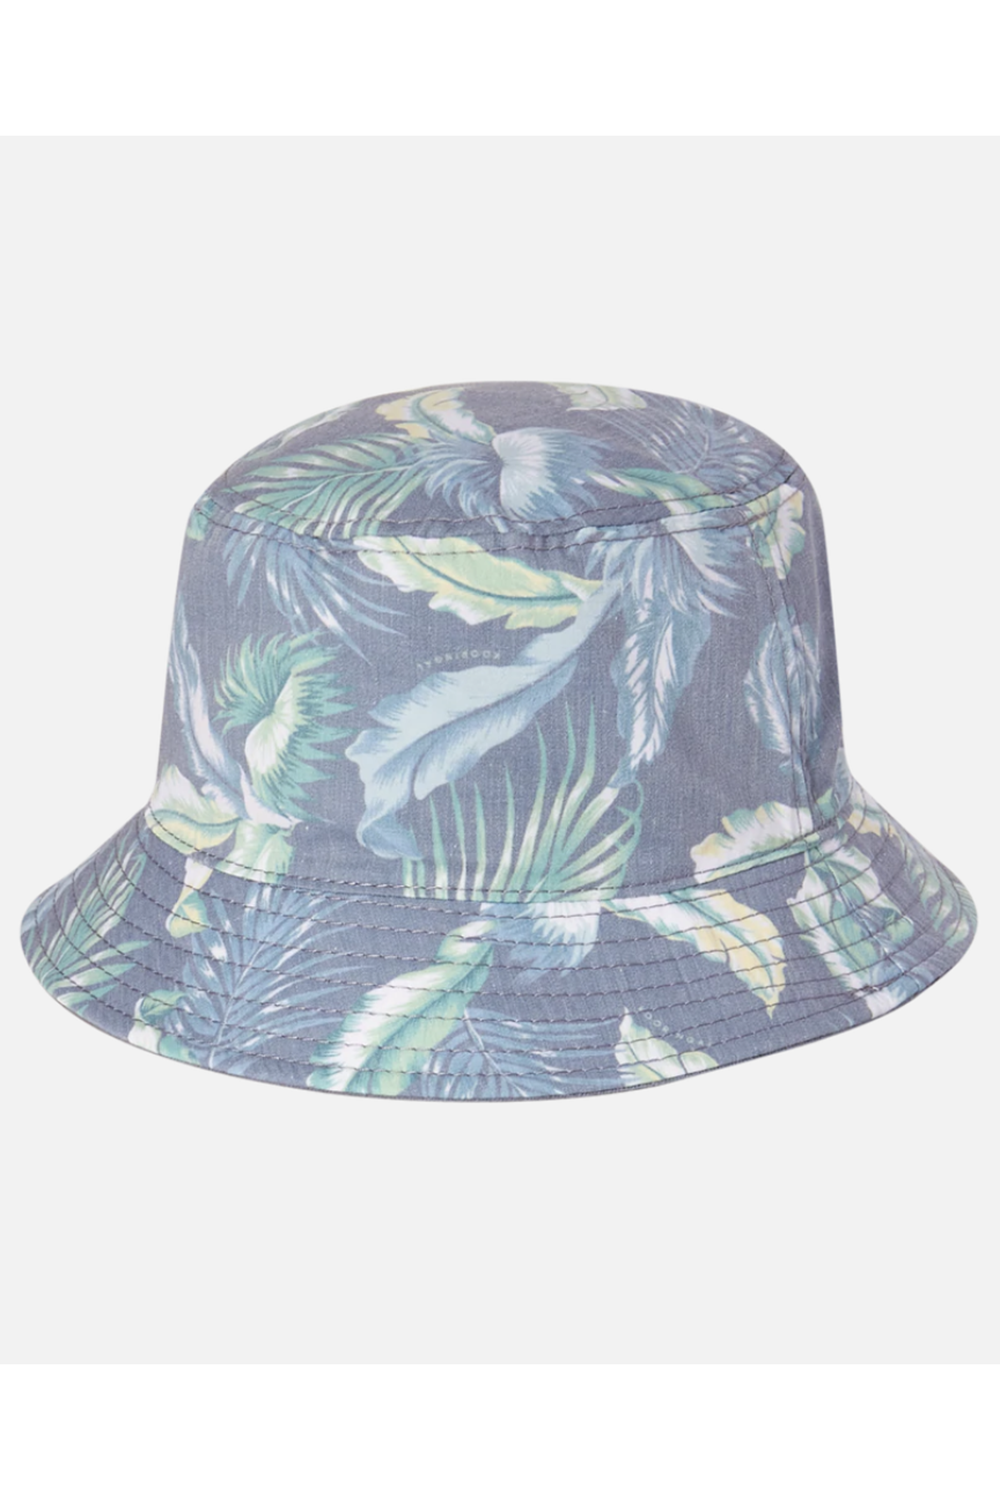 Ladies Bucket Hat - Cali Blue